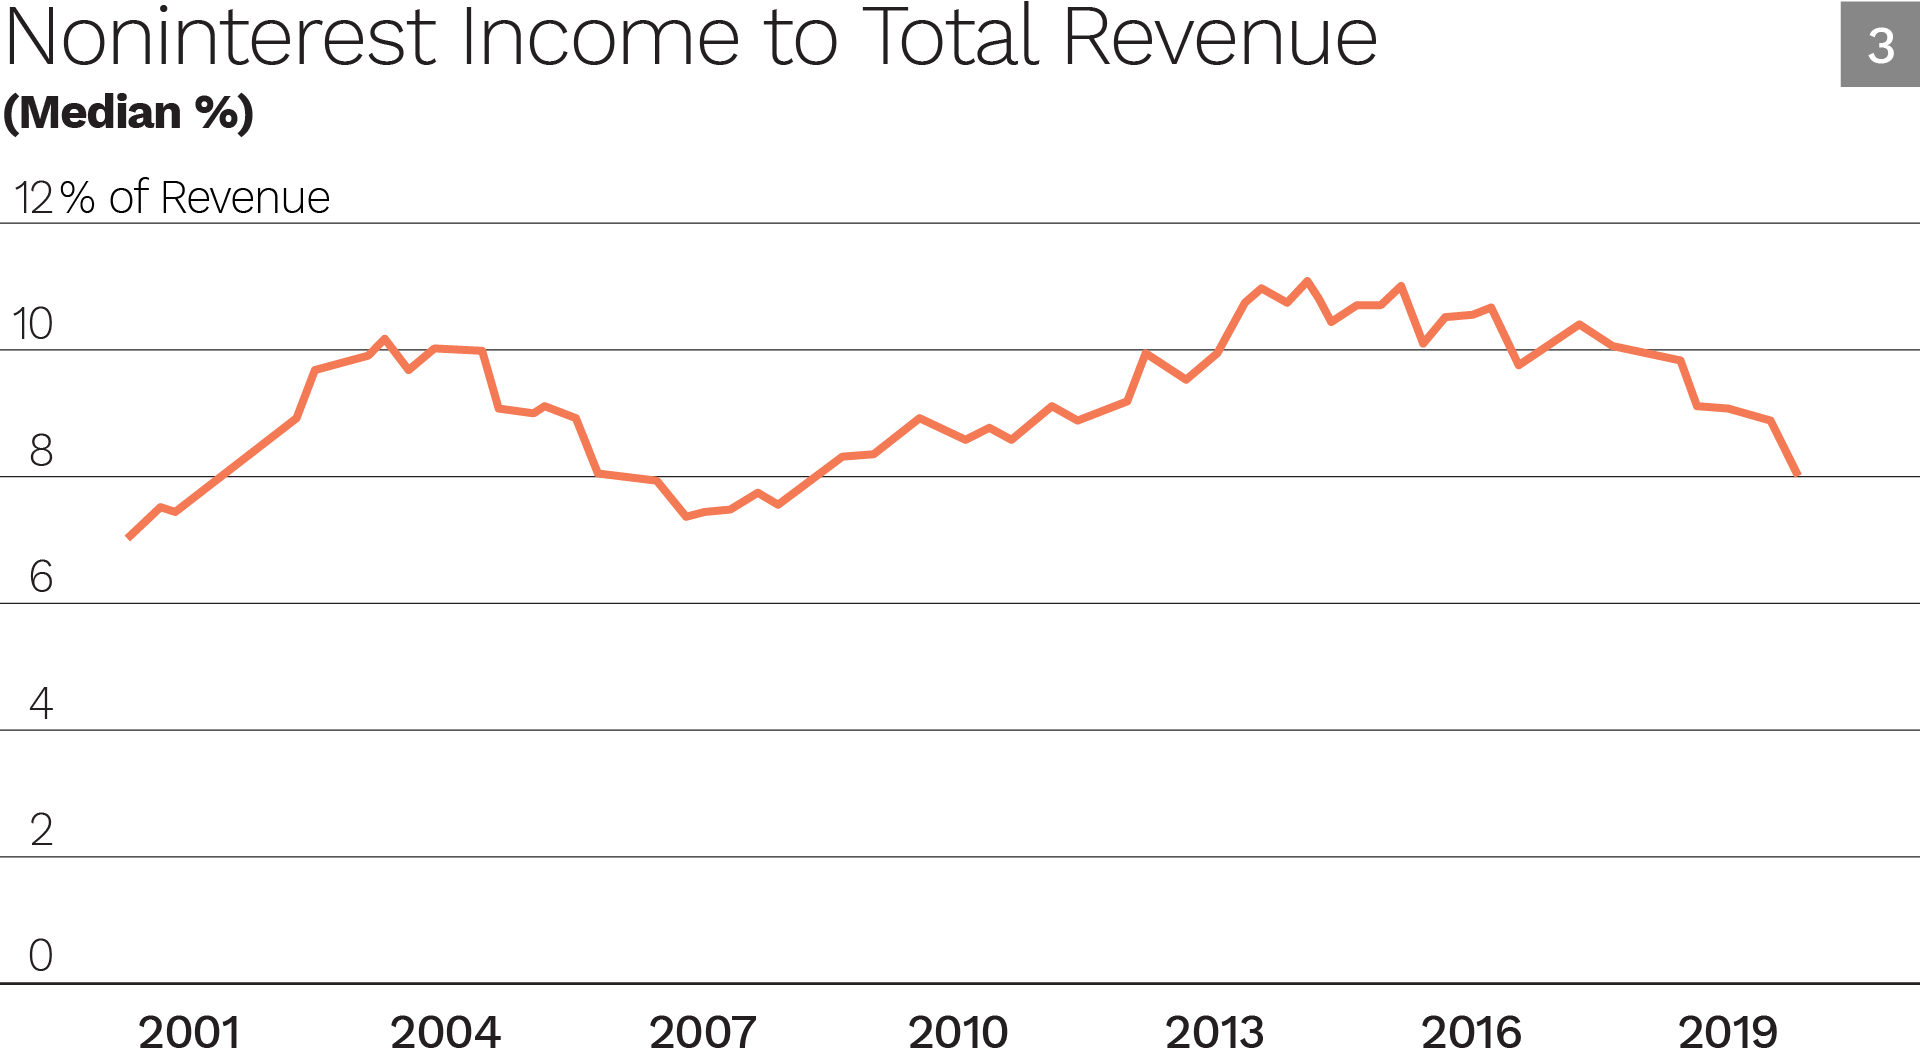 Noninterest Income to Total Revenue